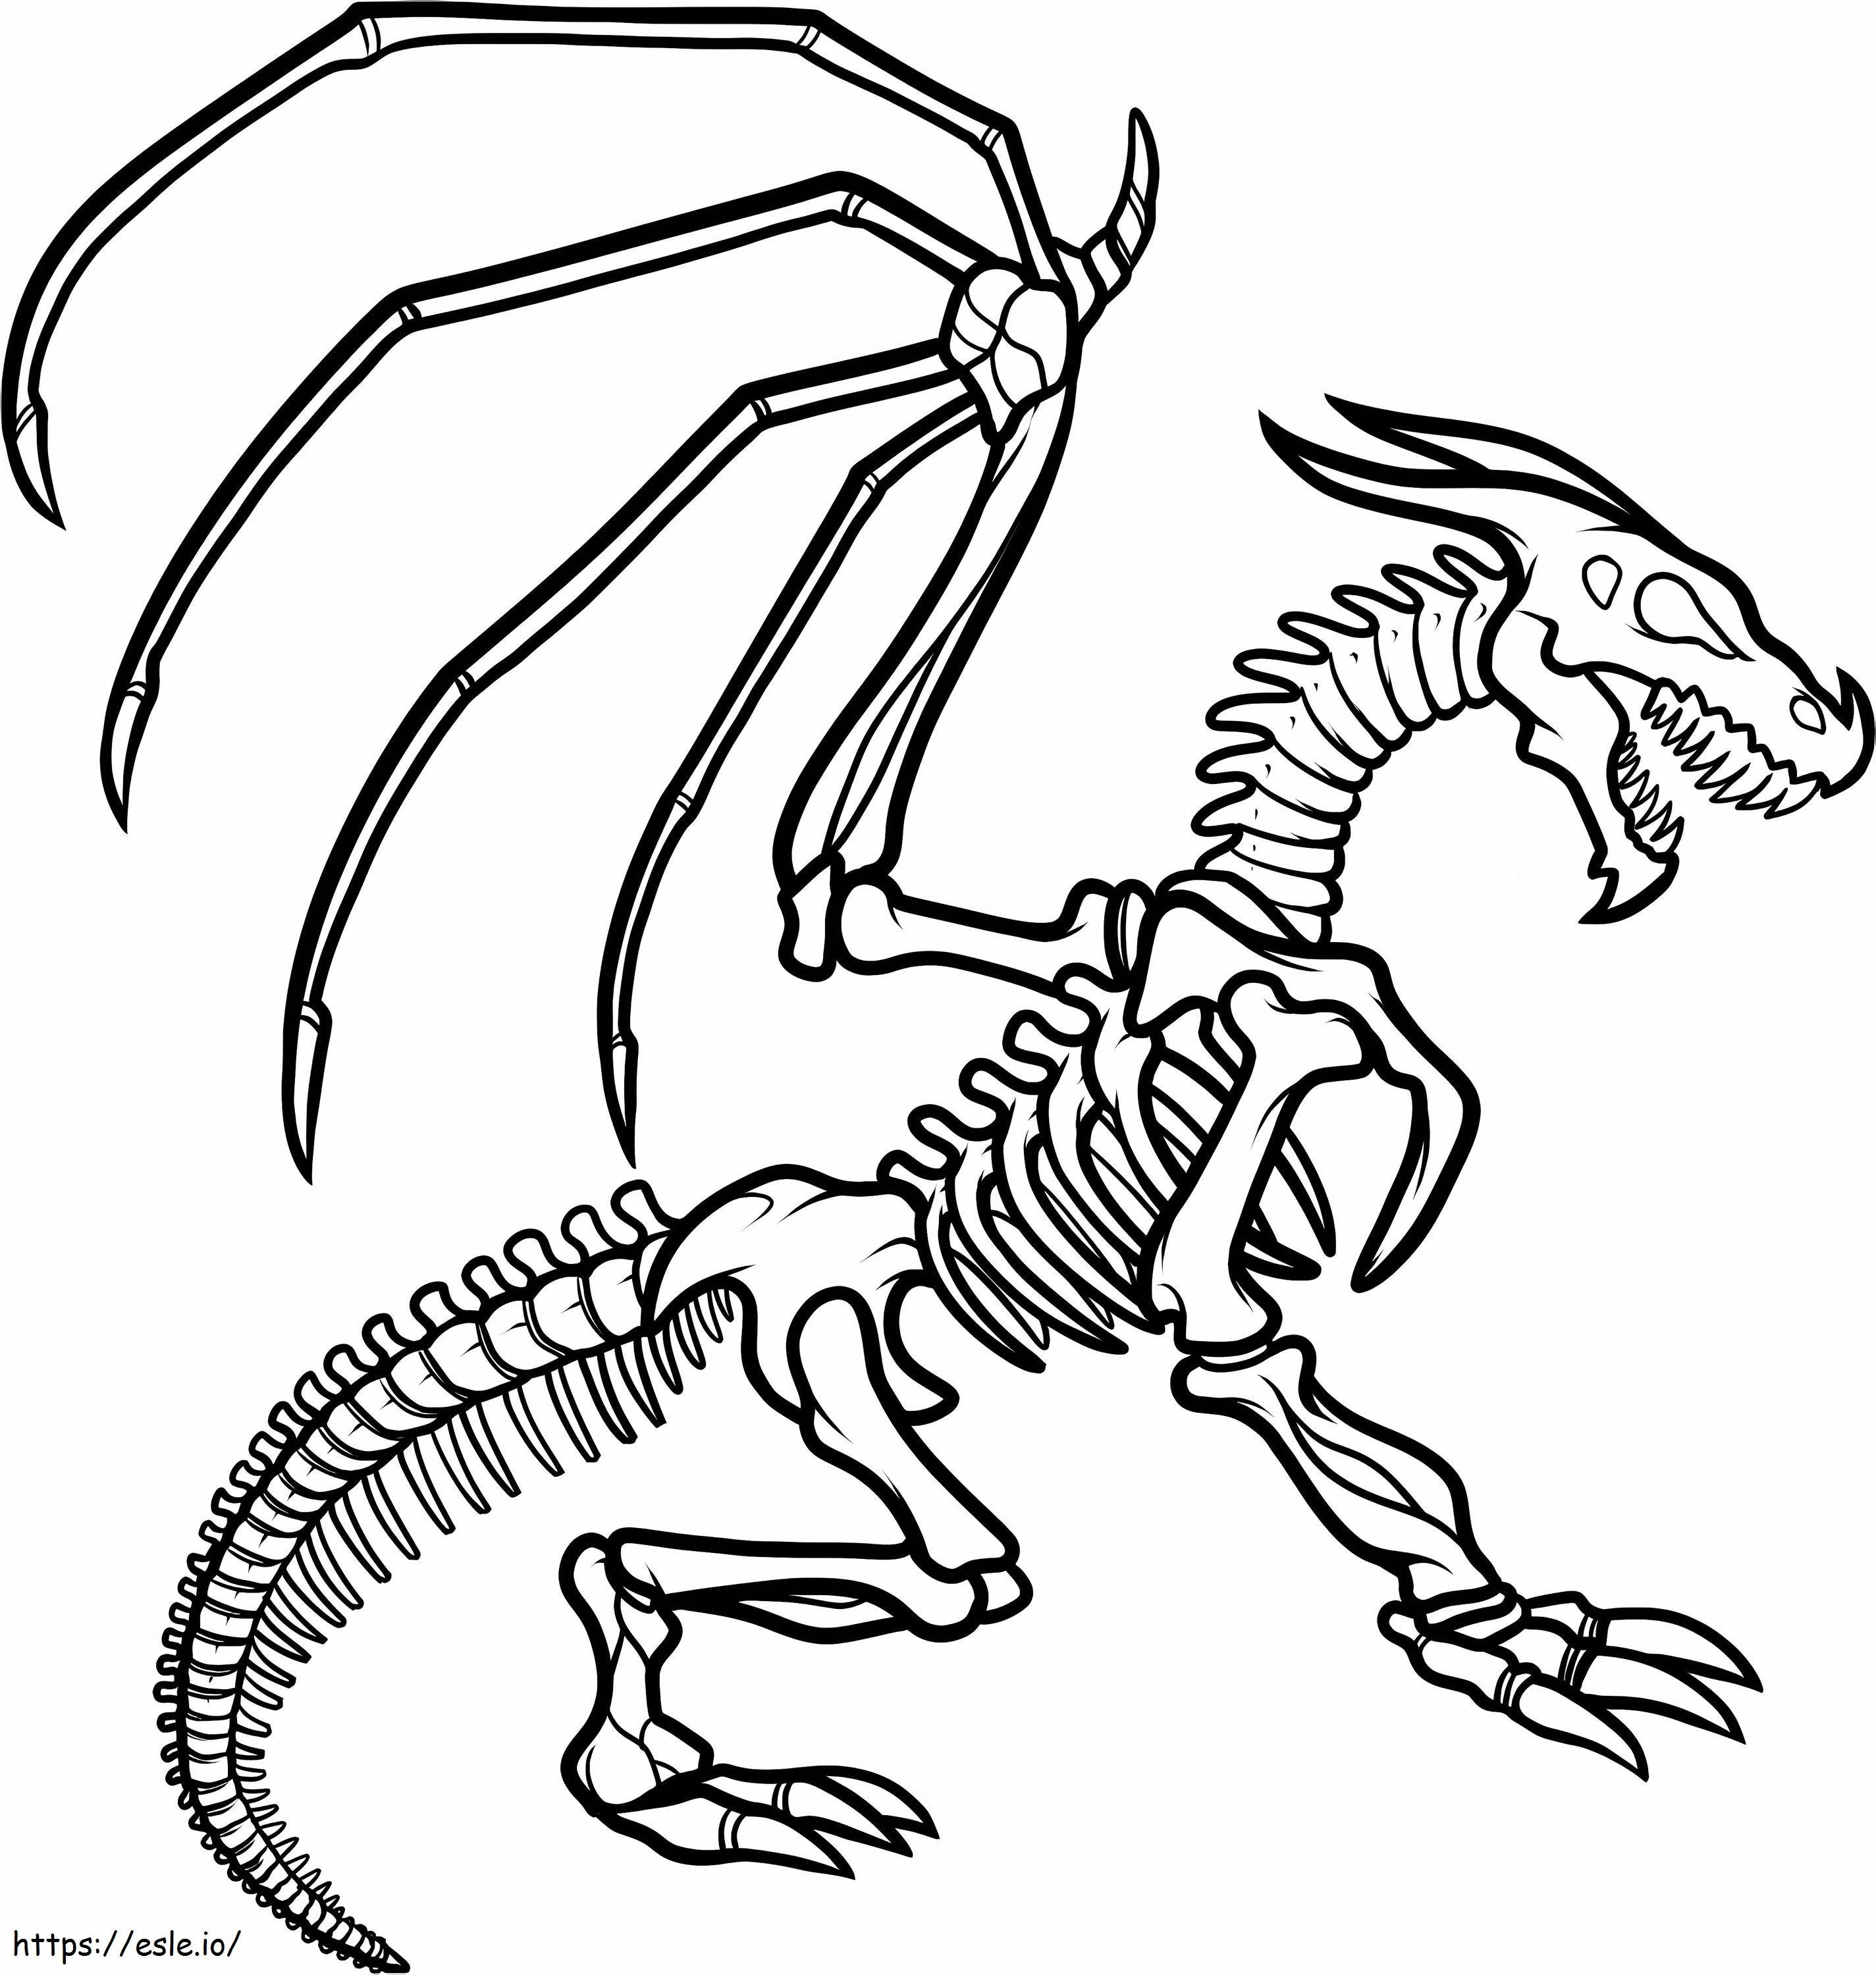 1547520862 Preschool Come disegnare lo scheletro del drago Scheletro del drago By Ilovepacsterandclyde D8Jkzcq da colorare